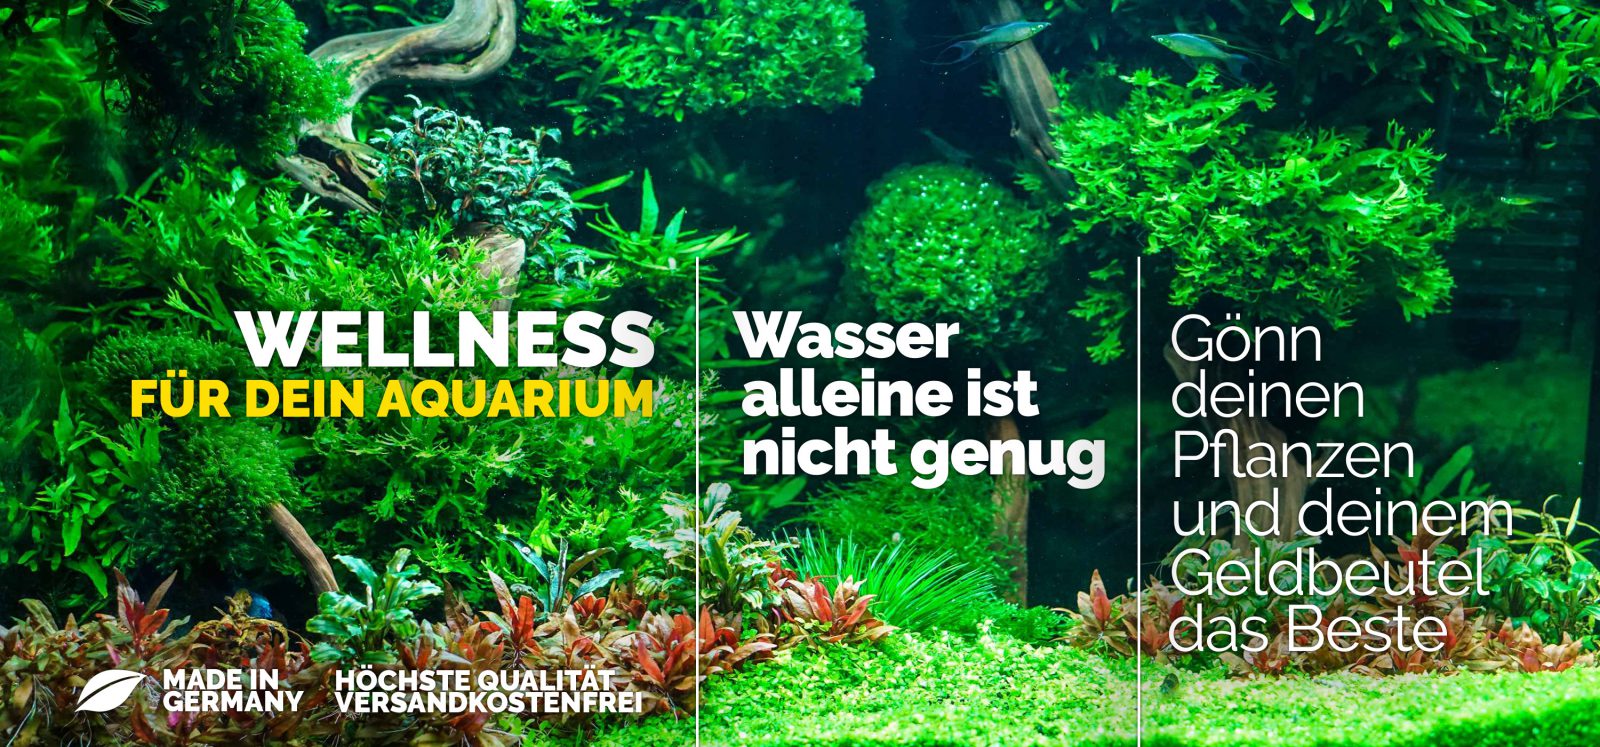 (c) Be-smart-aquarium.de